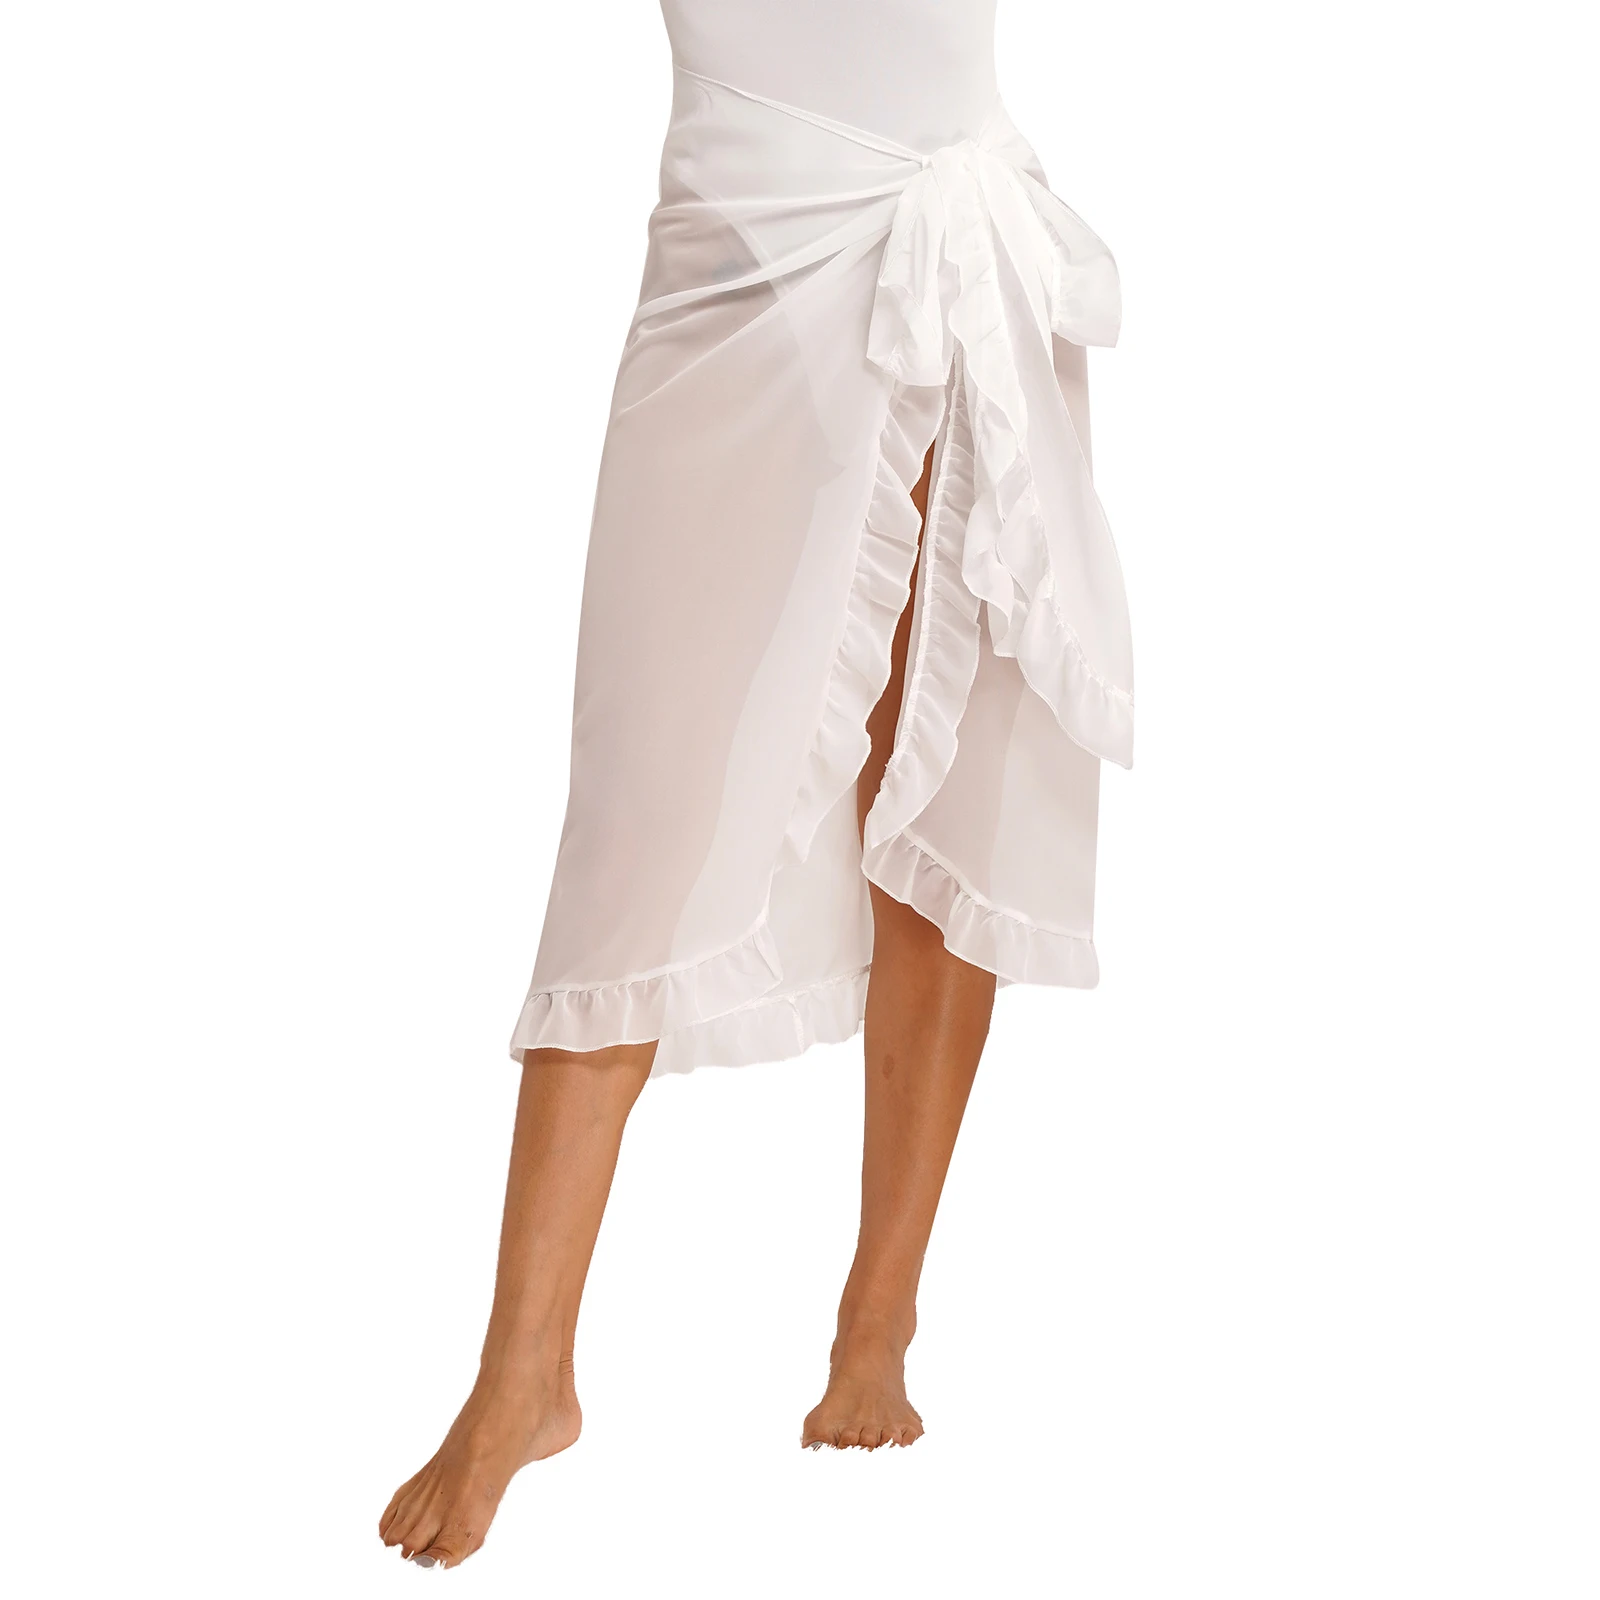 Kadın Sarong Şifon Mayo Bikini fırfır etekli Kapak-up Plaj Kravat Yan mini etek Uzun örgü Eşarp Şal Güneş koruyucu kıyafet